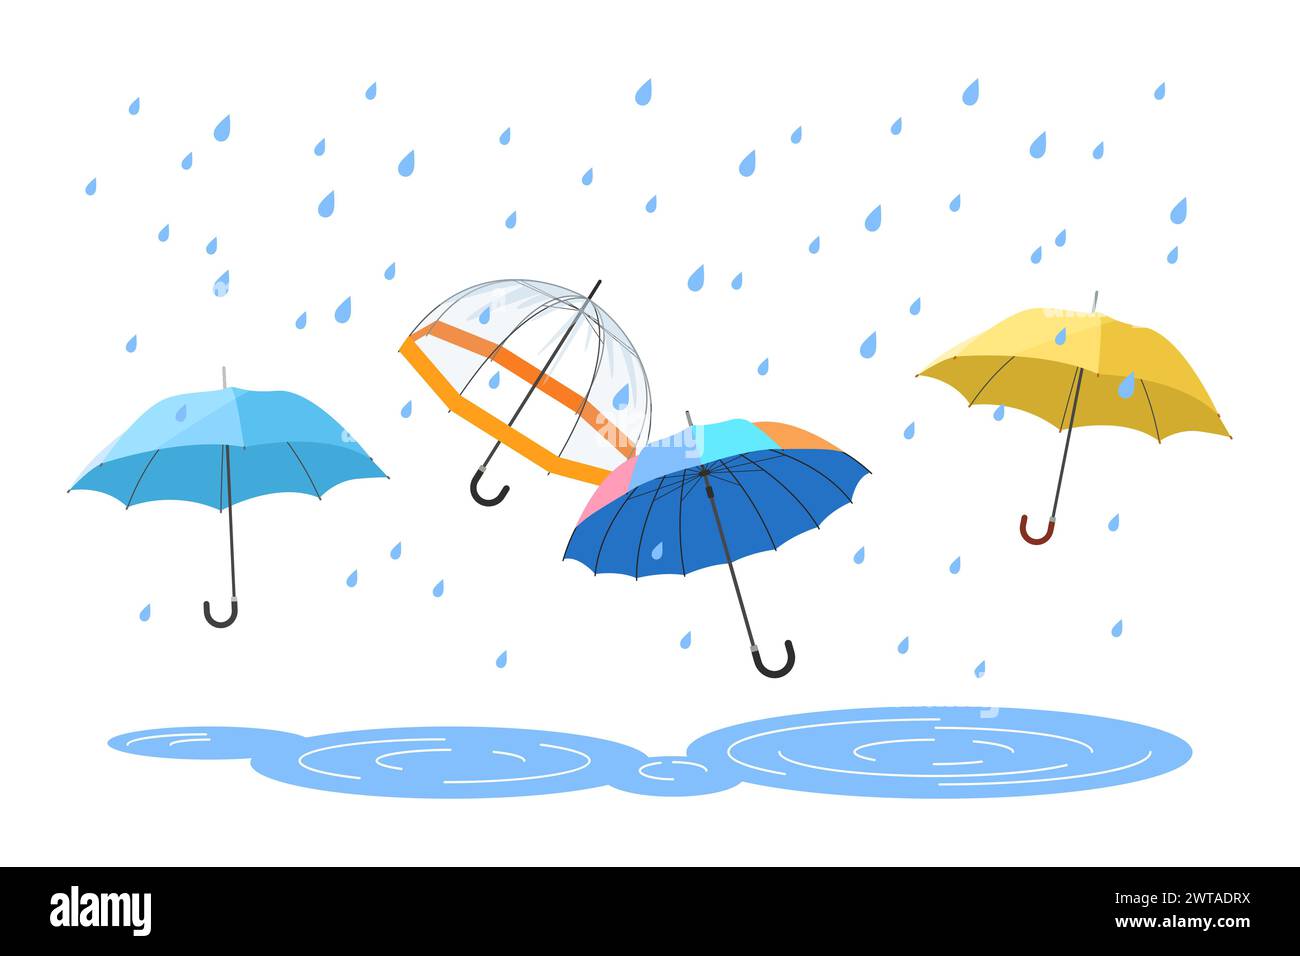 Los paraguas abiertos protegen de las gotas de lluvia en otoño, verano o lluvia de primavera, póster de clima lluvioso. Grupo de paraguas con manijas de diferentes colores e ilustración vectorial de dibujos animados de tela impermeable Ilustración del Vector